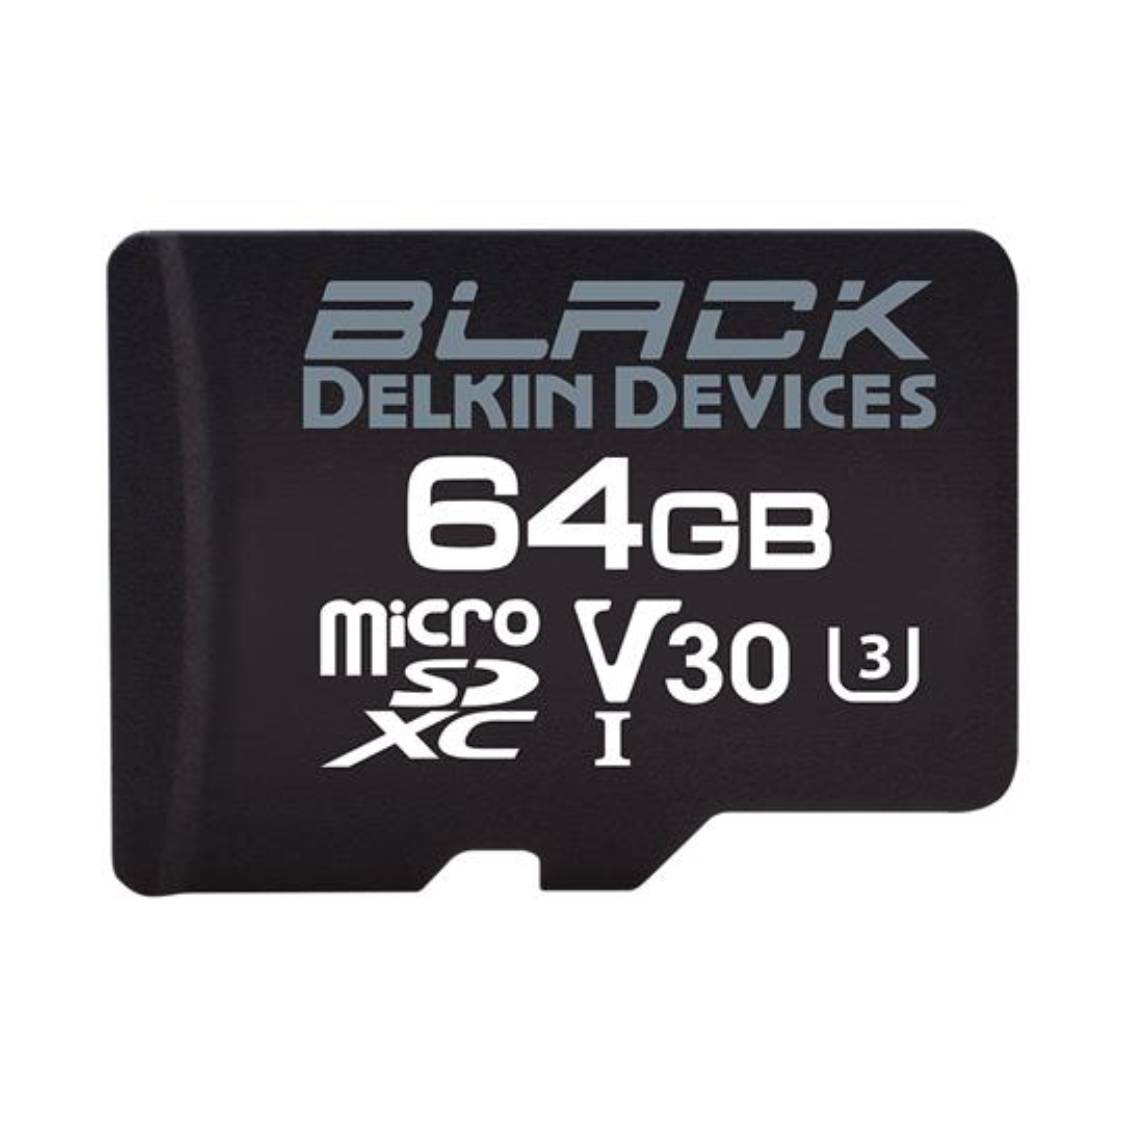 Delkin Black 64GB micro SDHC 90MB/s UHS I V30 Card